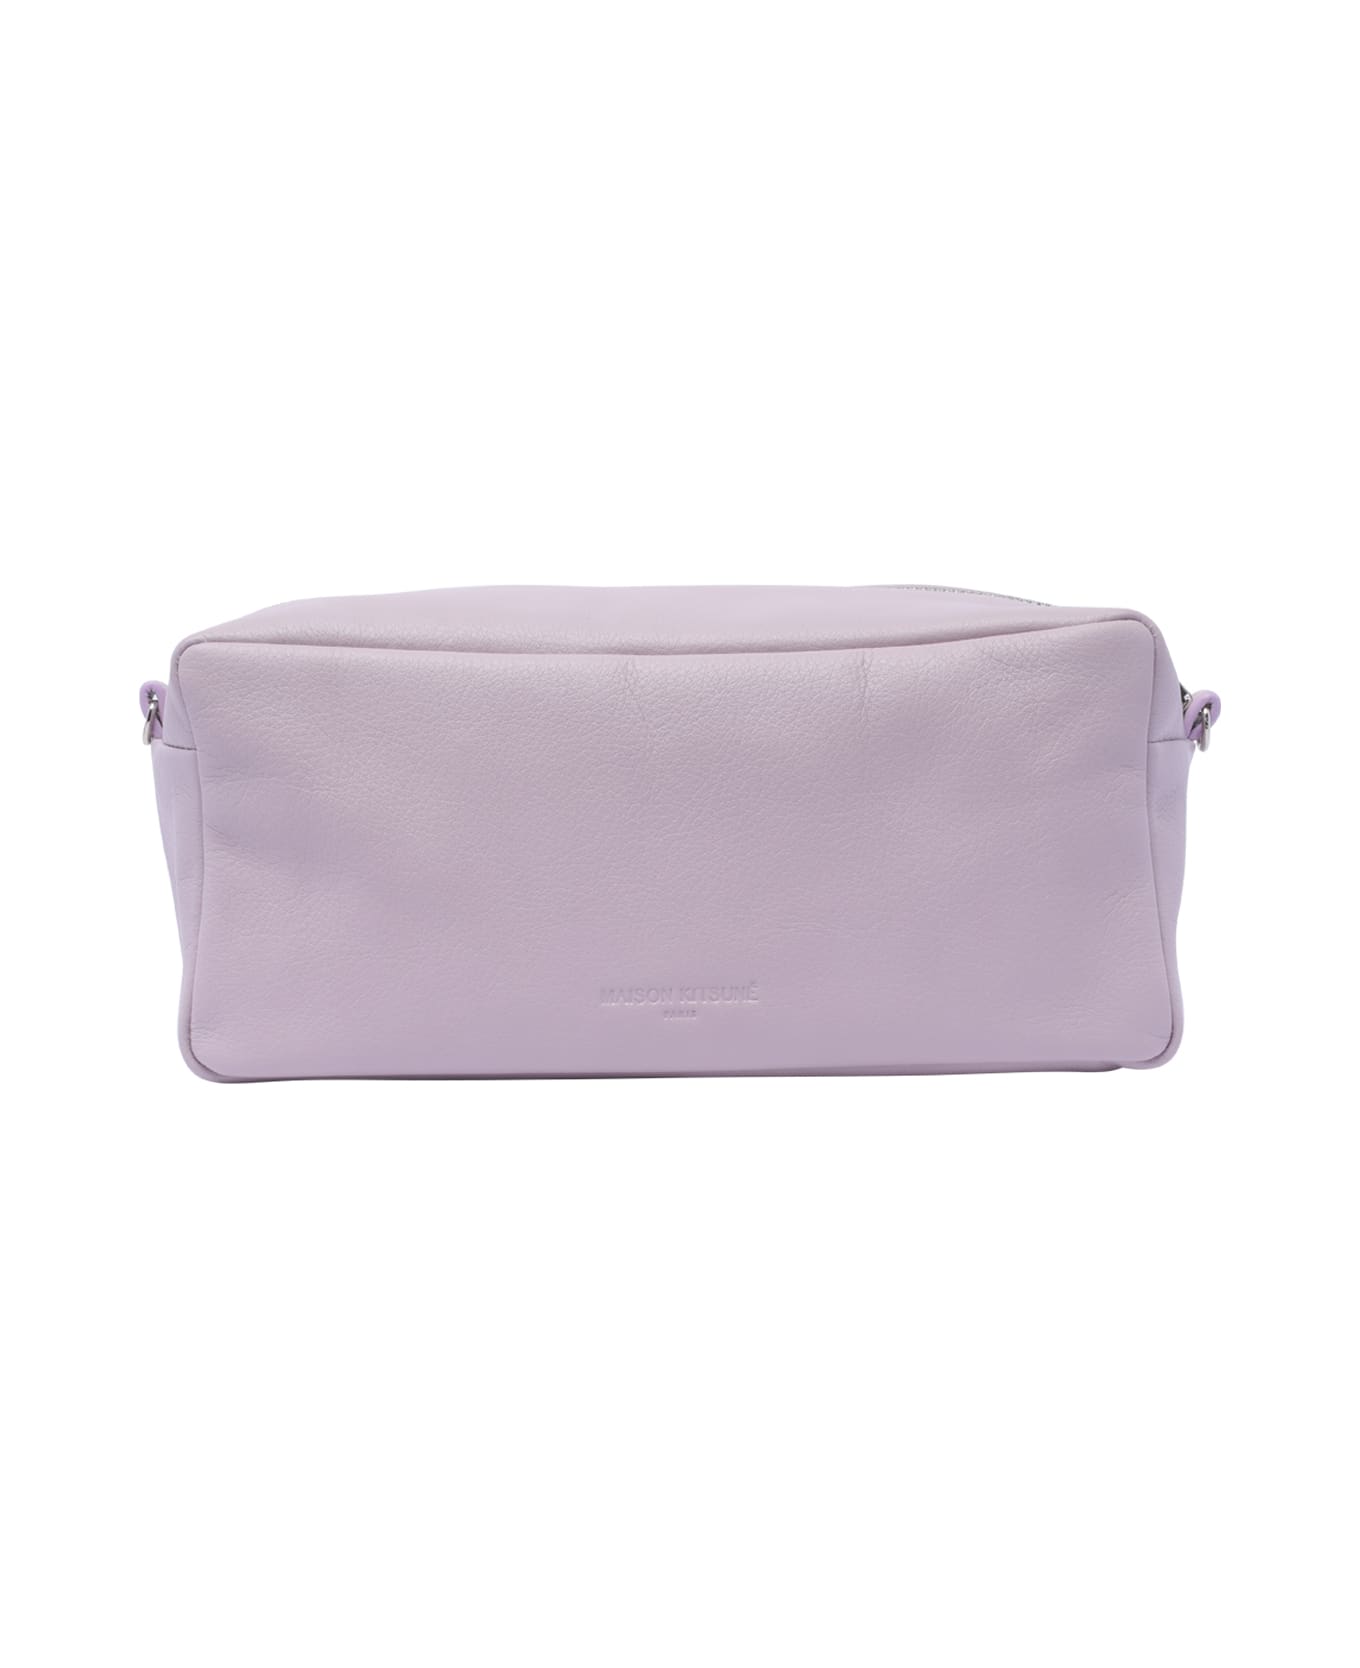 Maison Kitsuné Cloud Trousse Bag - Purple クラッチバッグ